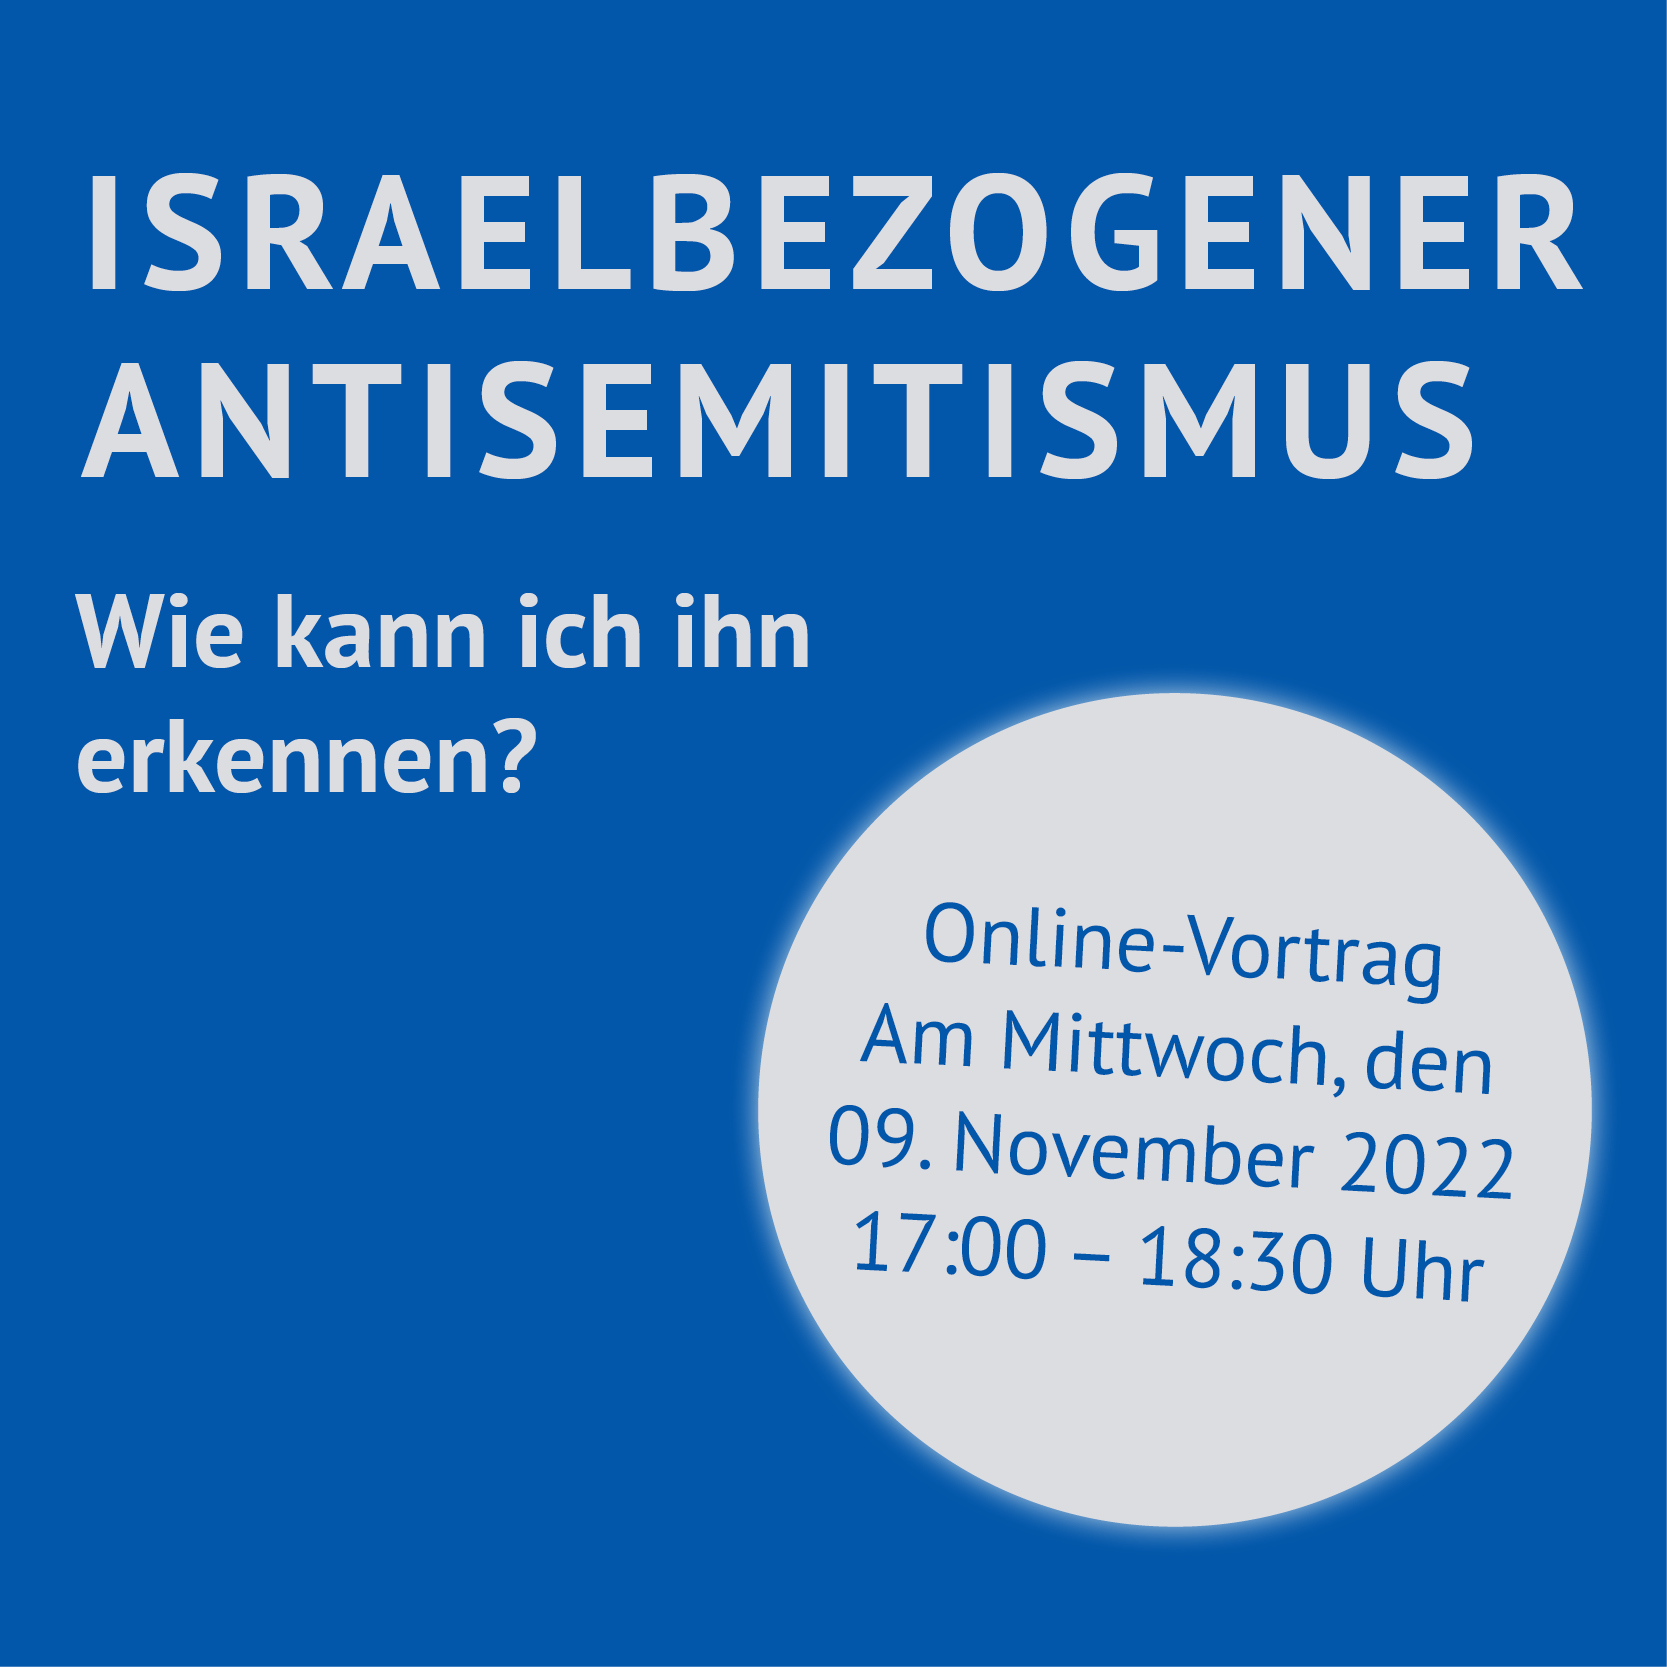 Am 9. November findet der Online-Vortrag israelbezogener Antisemitismus statt. 